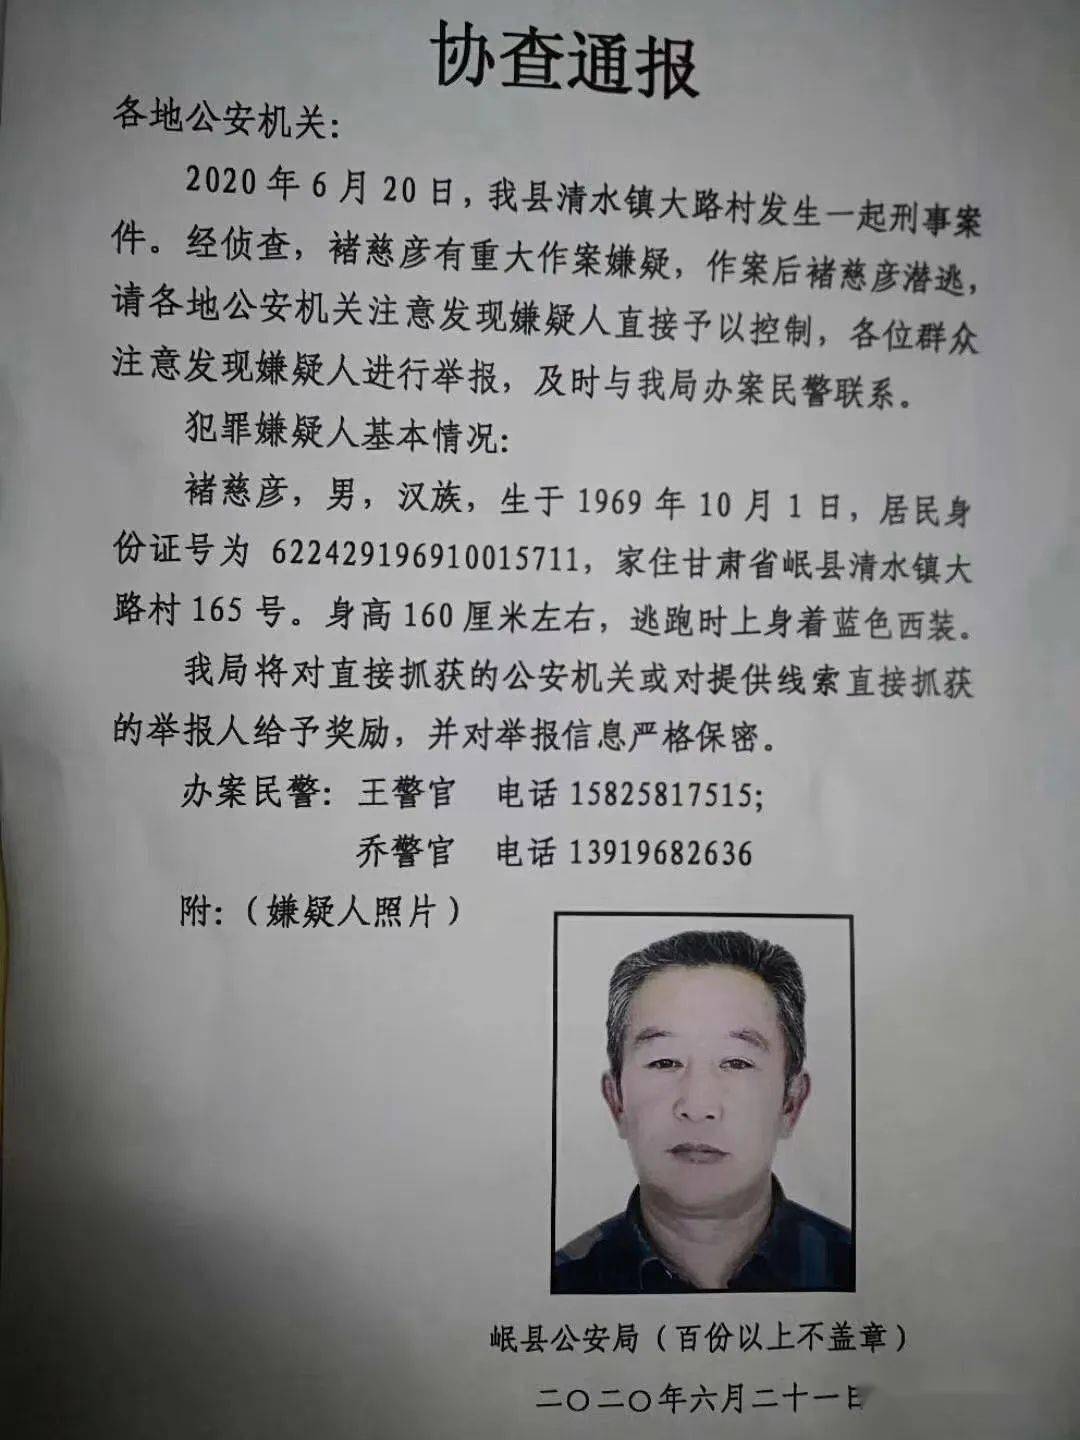 协查通报:岷县清水镇发生一起刑事案件.